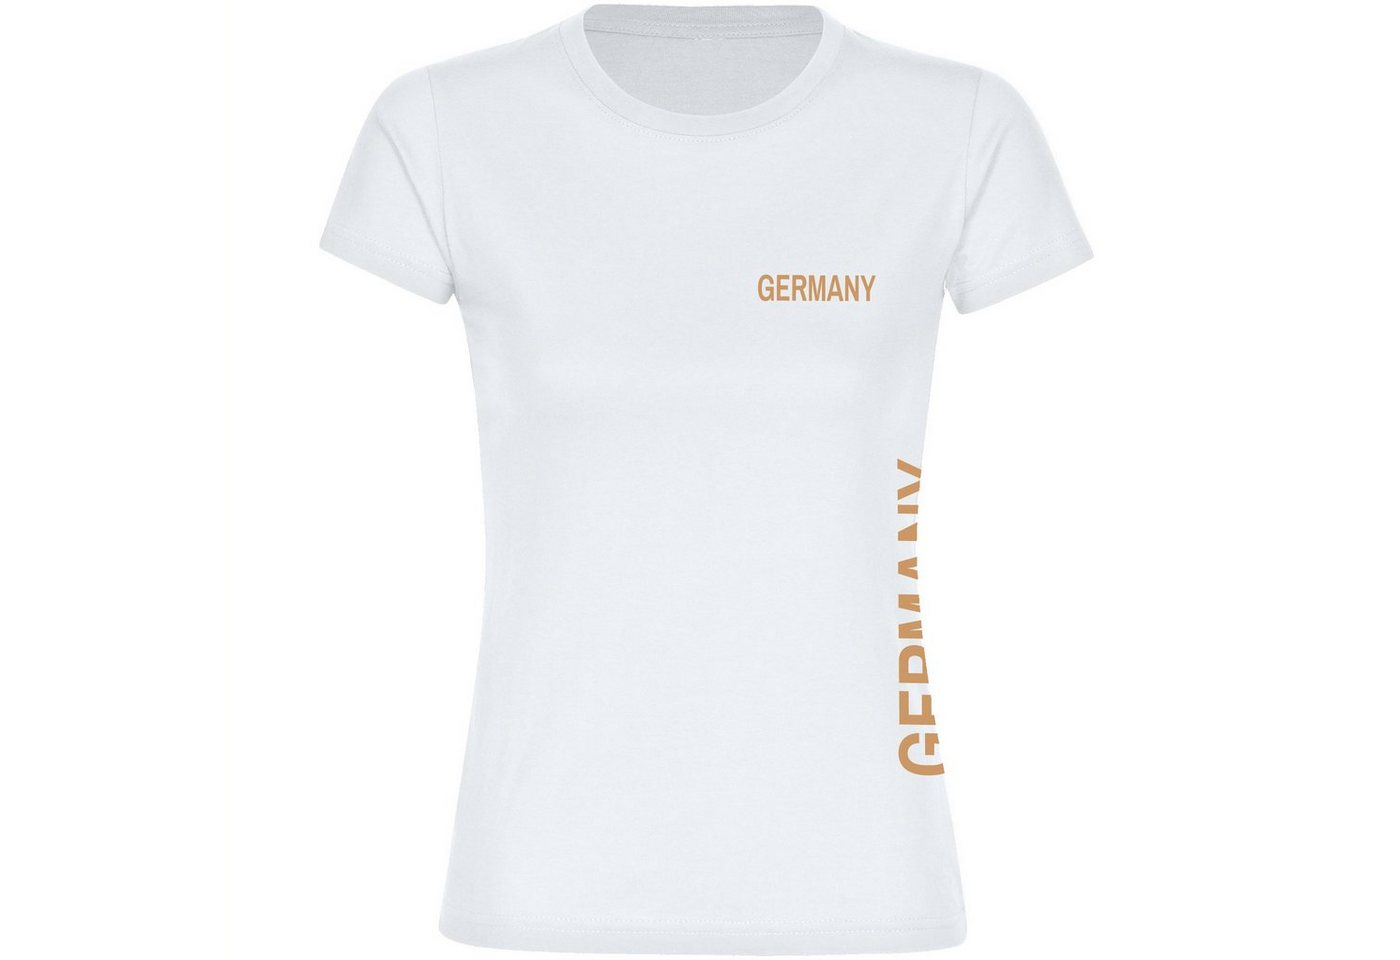 multifanshop T-Shirt Damen Germany - Brust & Seite - Frauen von multifanshop